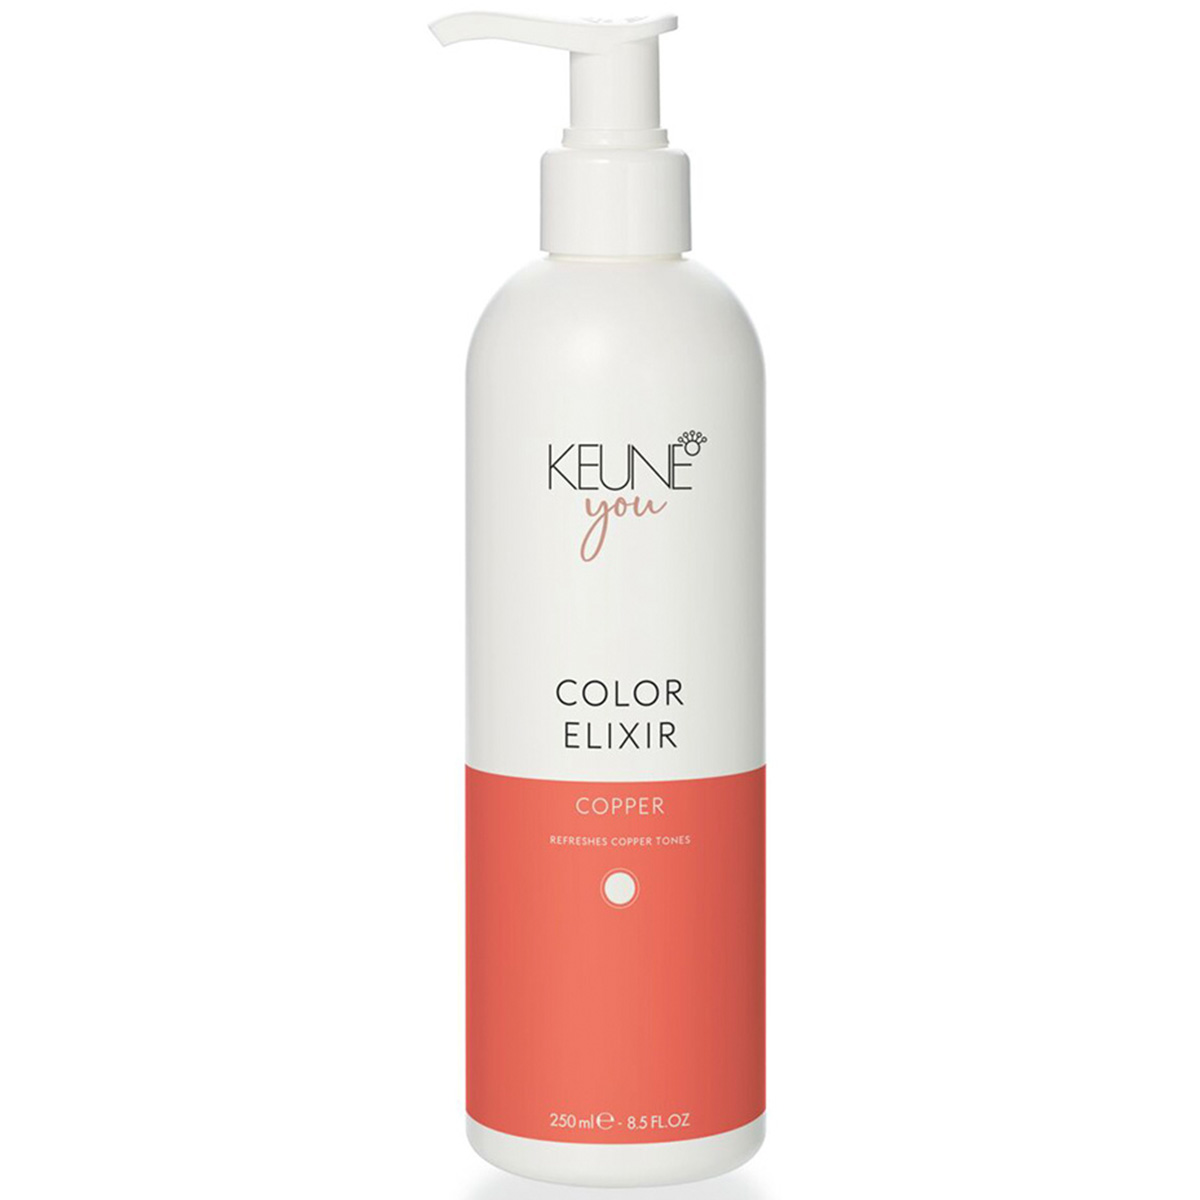 Keune Эликсир для натуральных и окрашенных рыжих волос Медный Color Elixir Cooper, 250 мл (Keune, You) цена и фото